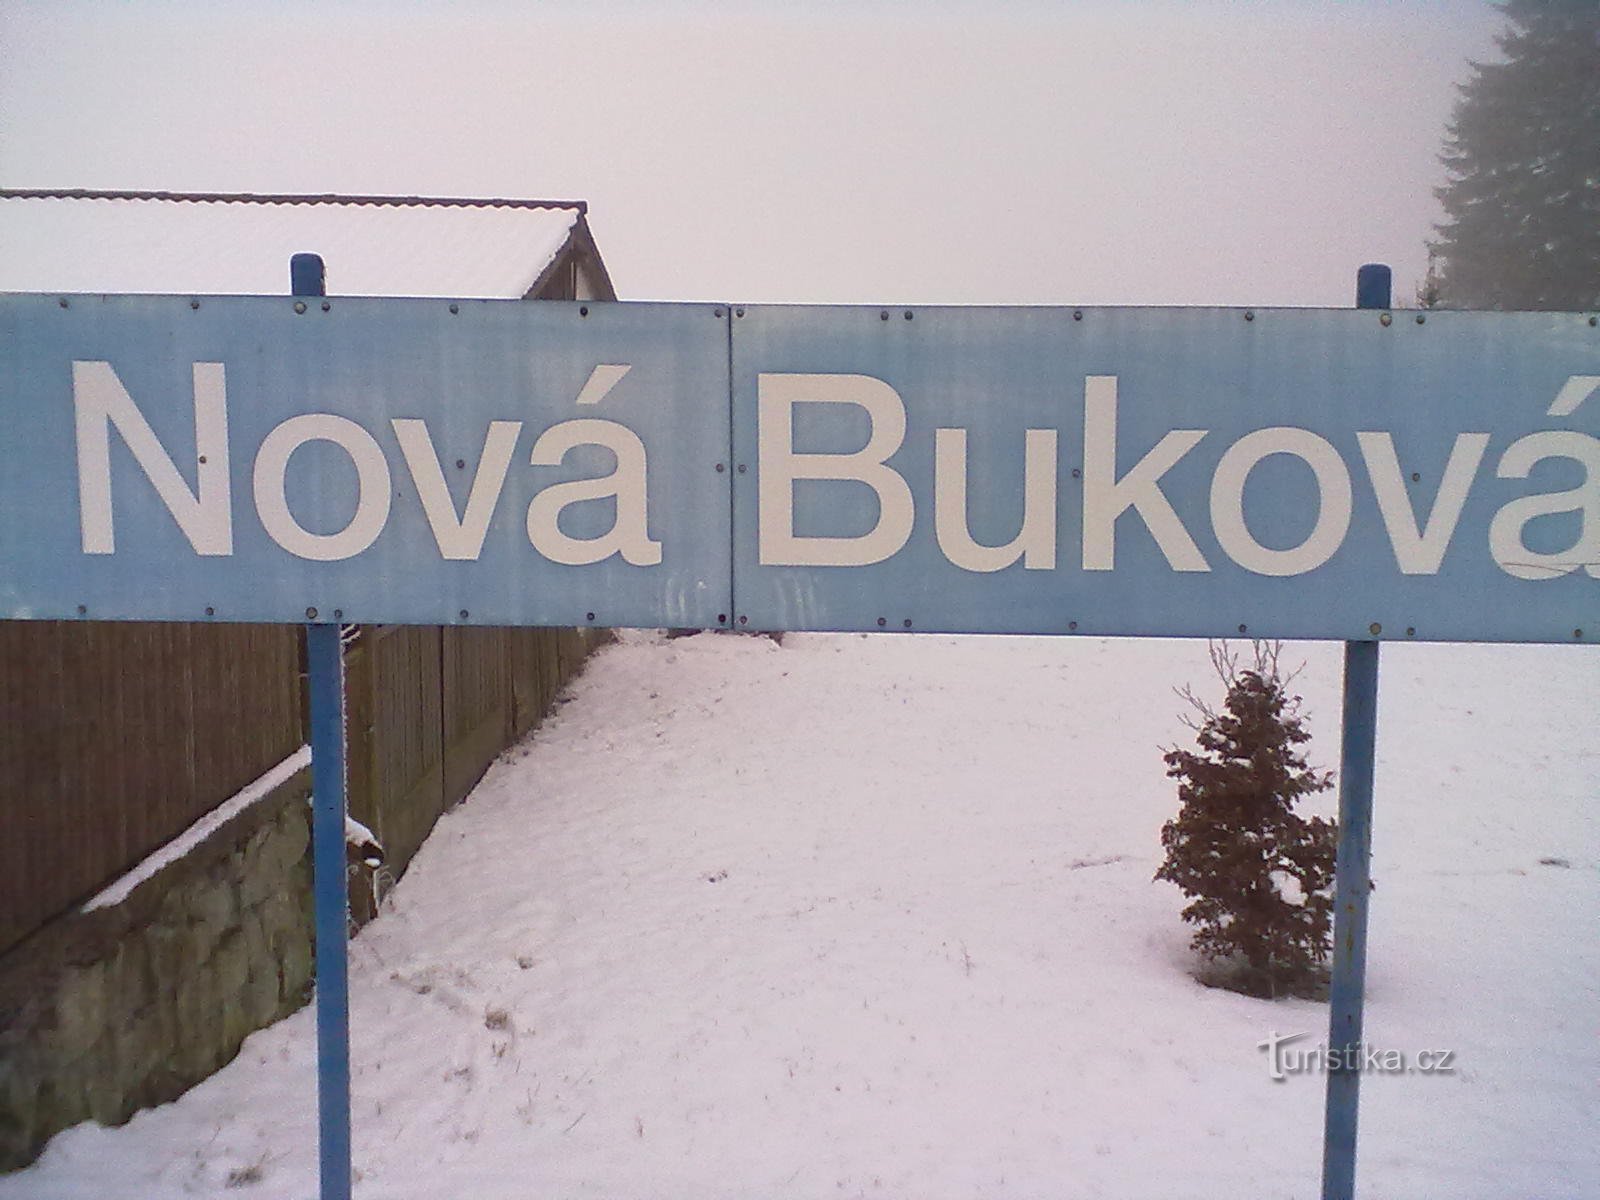 Zastávka Nová Buková - oproti Pelhřimovu je zde jako na Sibiři.